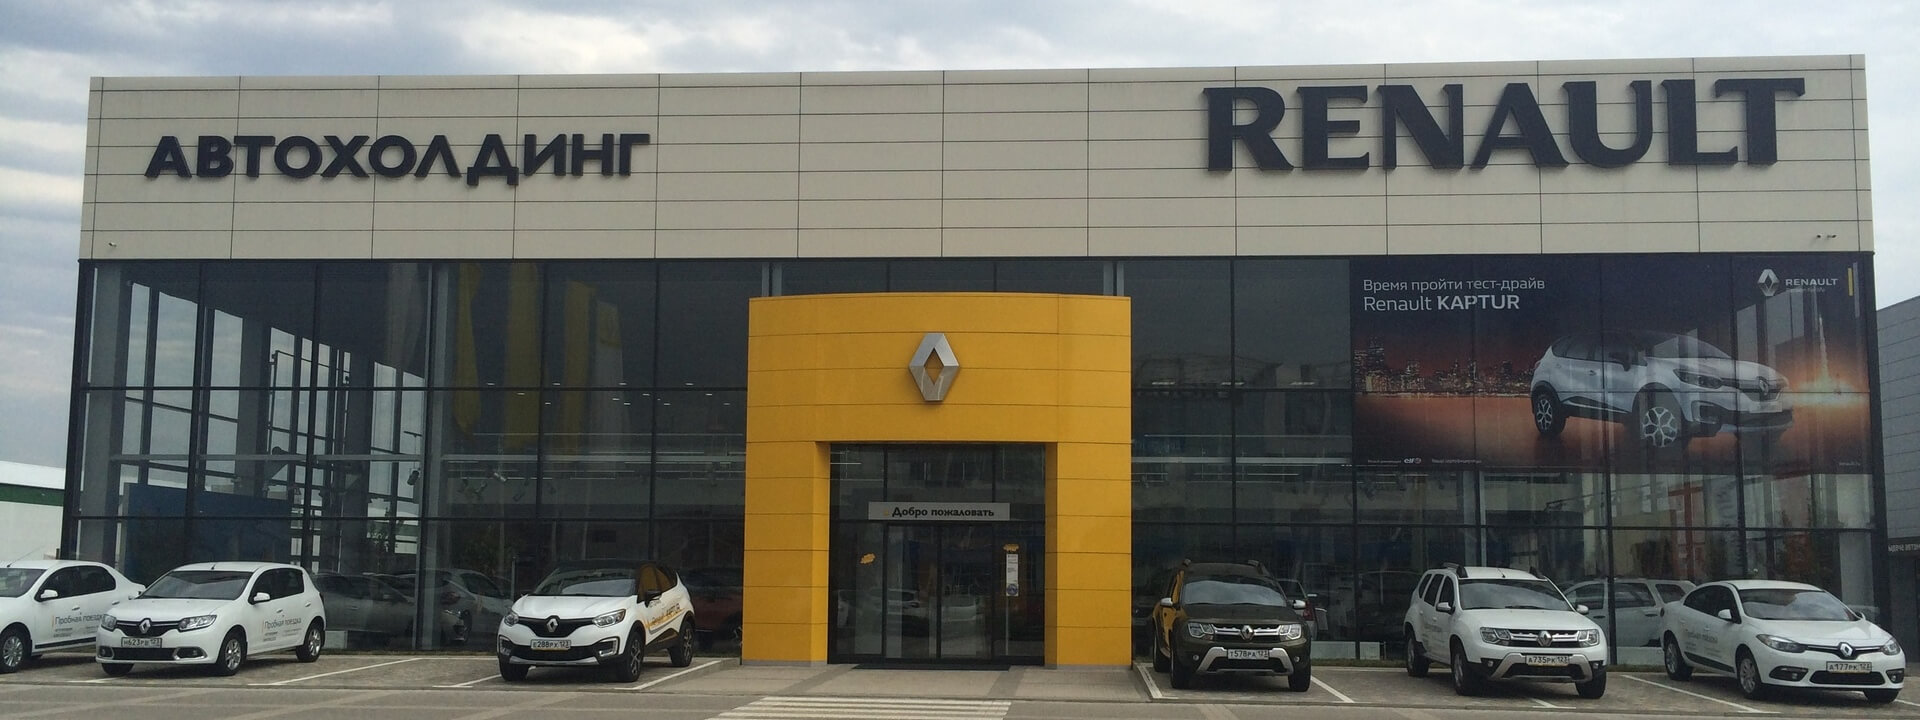 Ремонт Renault Symbol — сервис, ремонт и техническое обслуживание (ТО) автомобилей Рено Симбол в автосервисе в Краснодаре